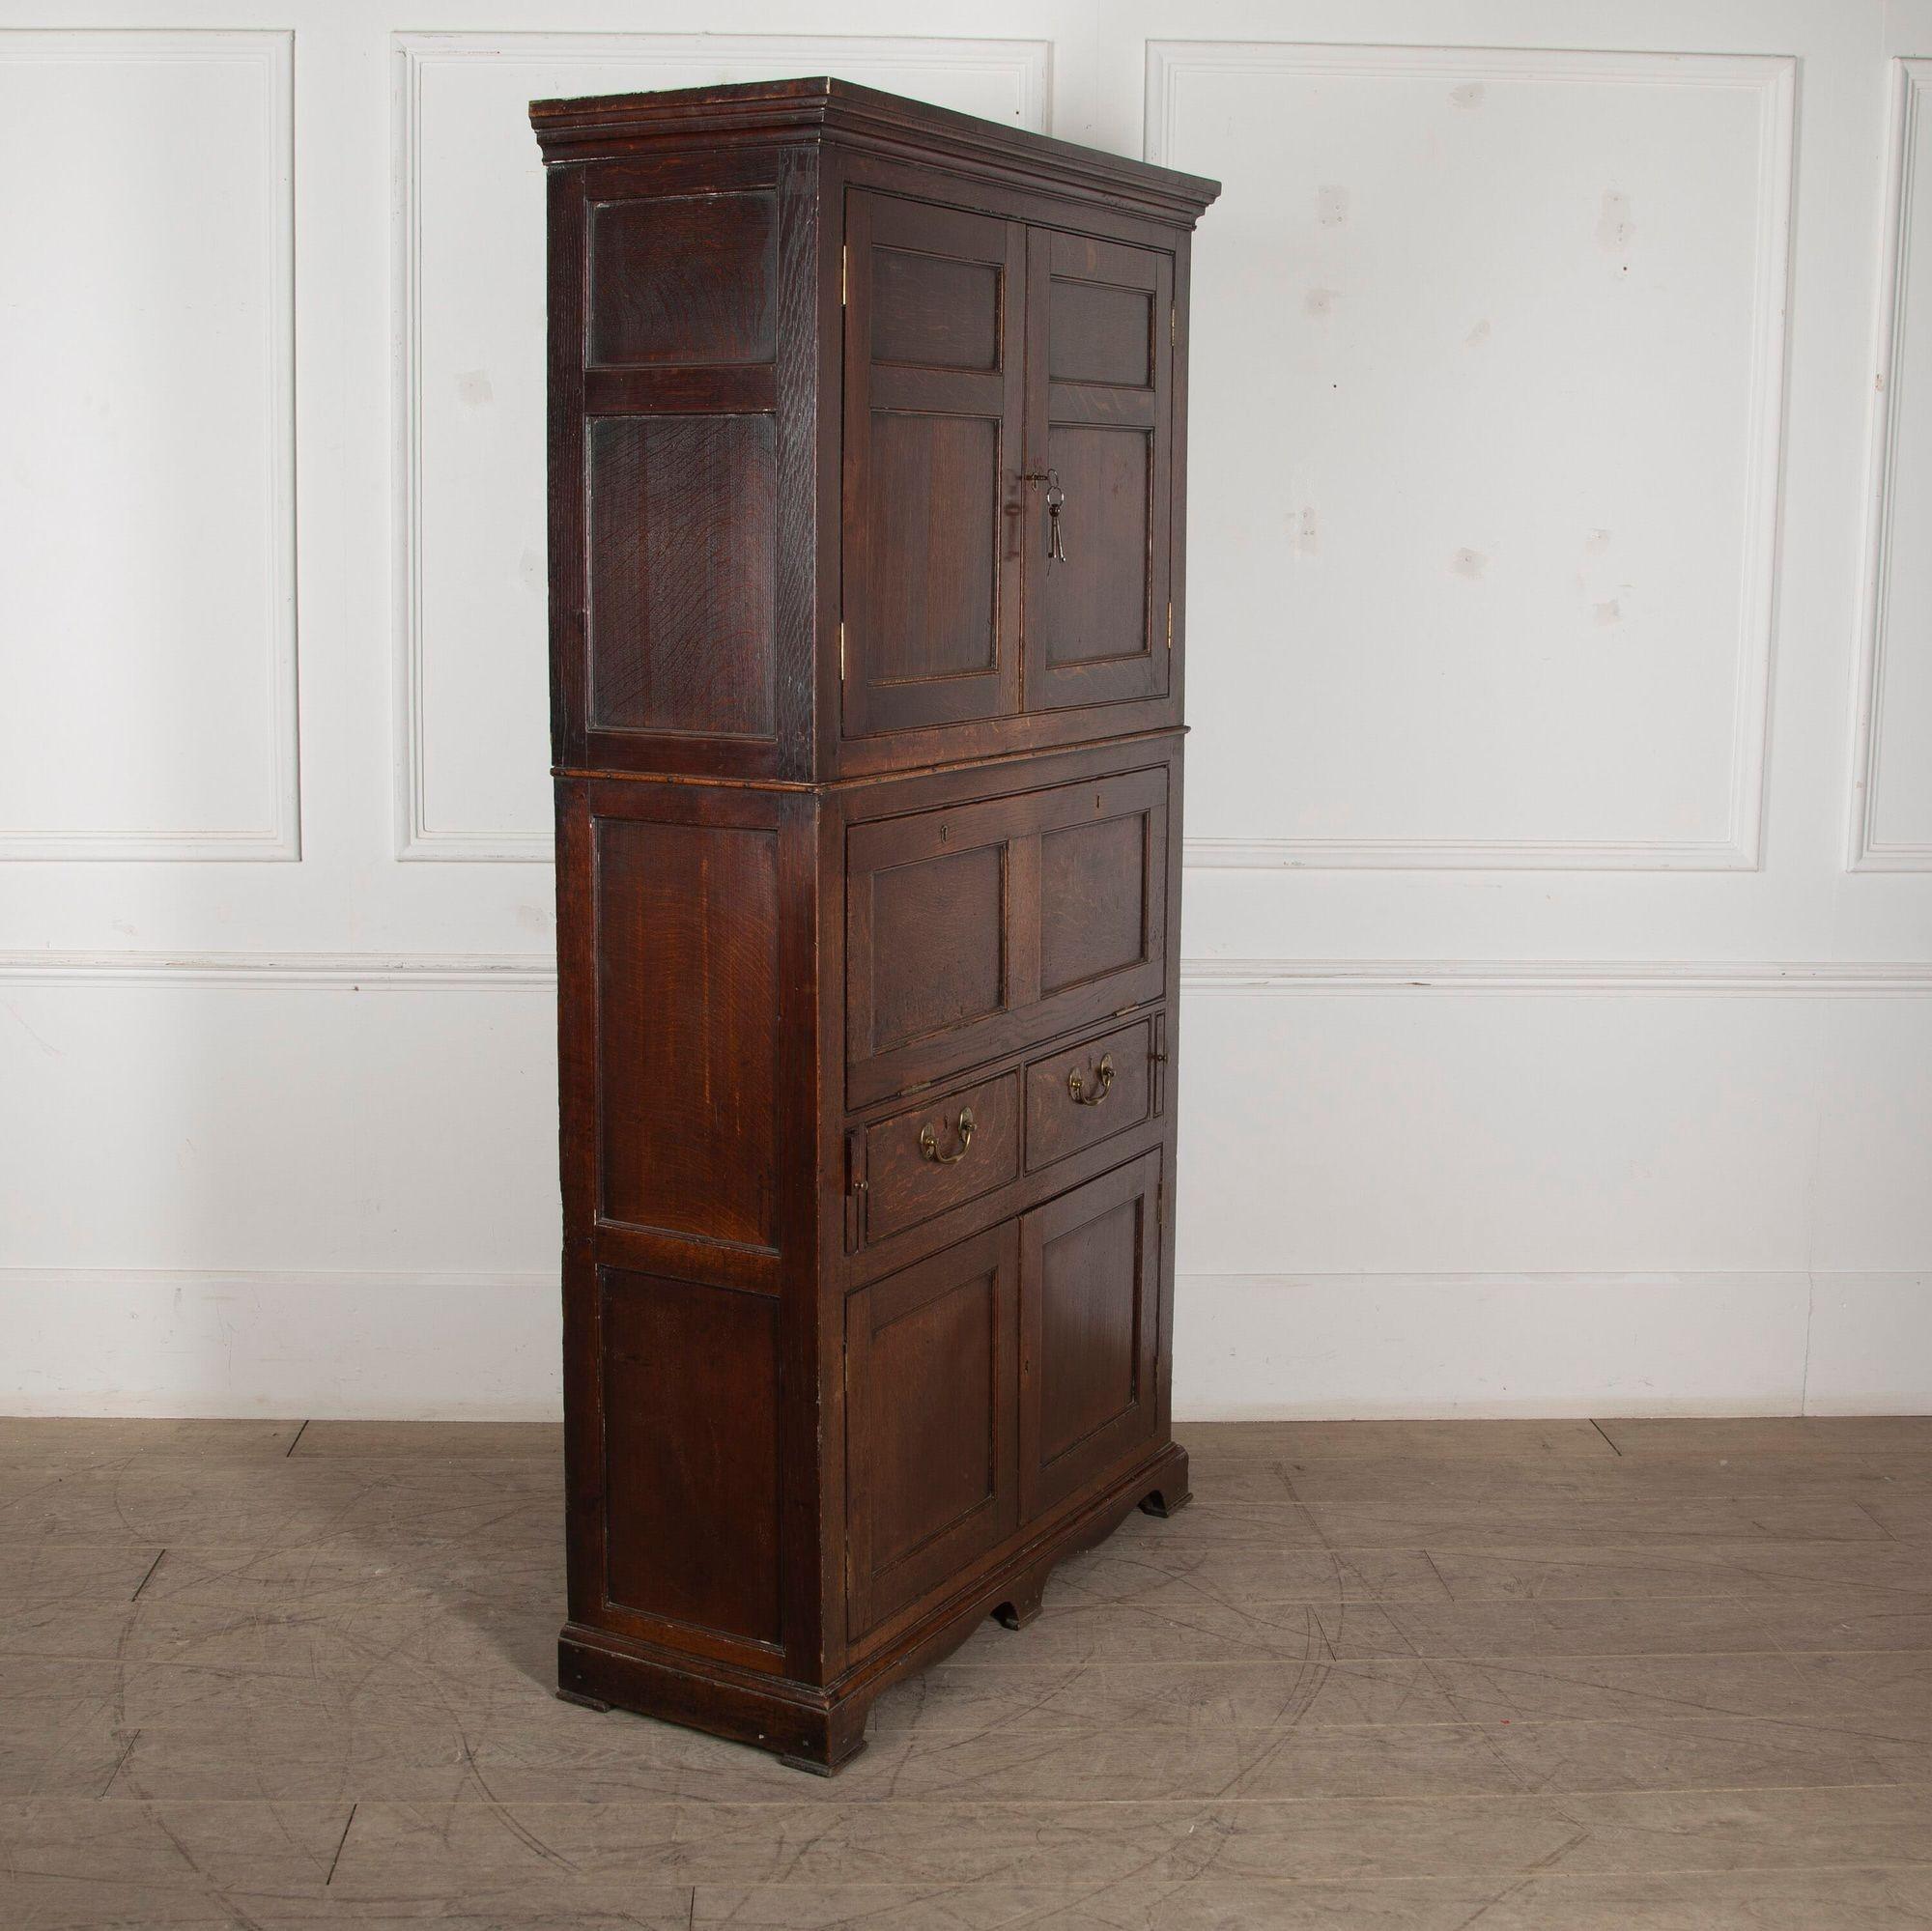 Très belle armoire secrète en chêne du début du 19ème siècle.
Cette armoire, de petites proportions, a été réalisée par un ébéniste accompli.
Dans un état totalement intact, poignées d'origine, charnières, serrures, clés, pieds, et la plus belle